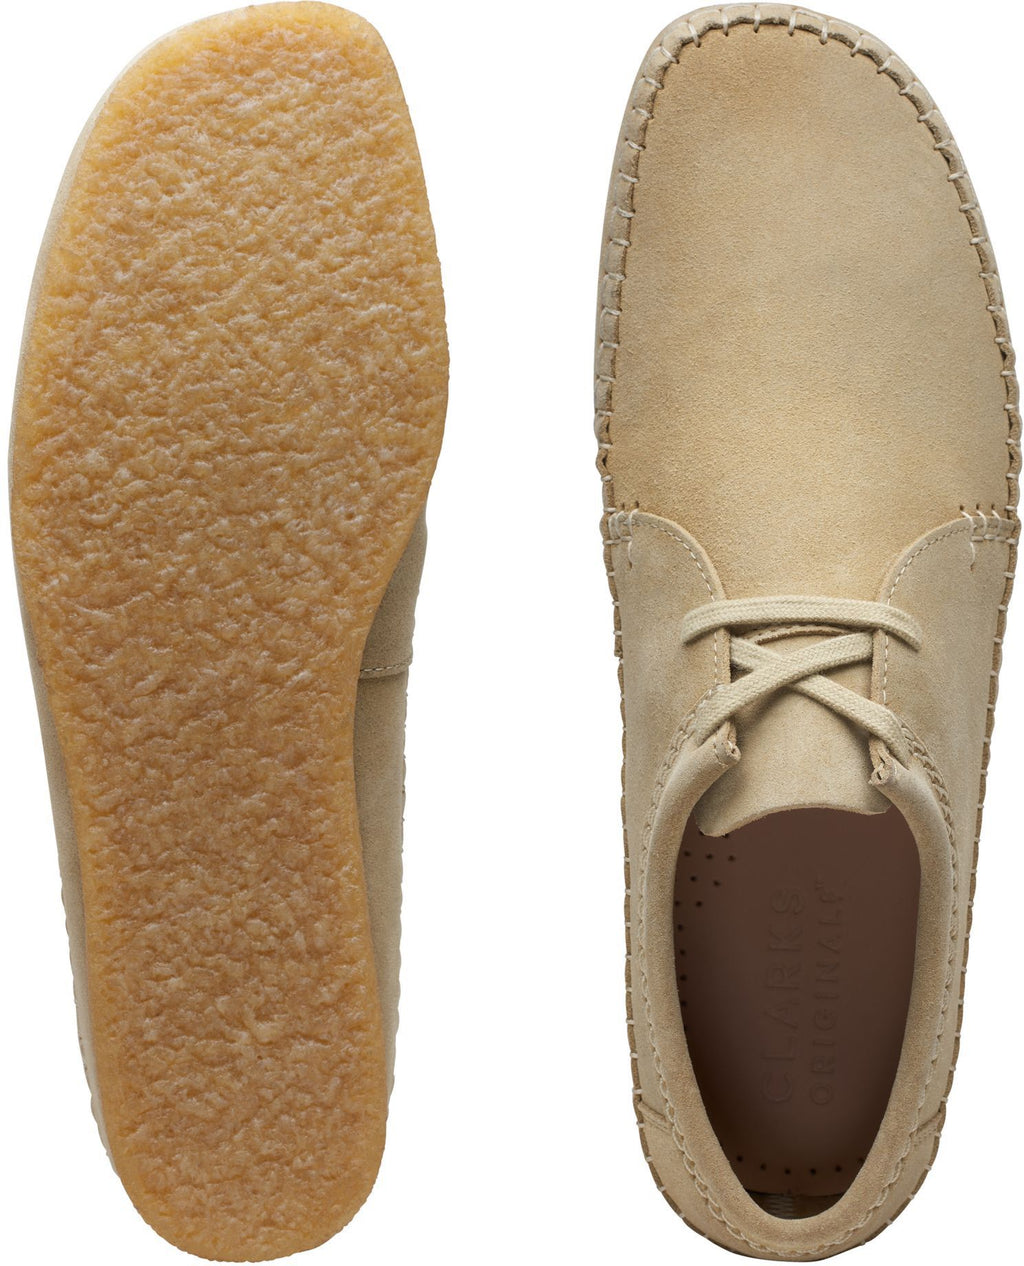  Clarks Originals Mocassini Weaver M Shoes Maple Suede Beige Uomo - 4